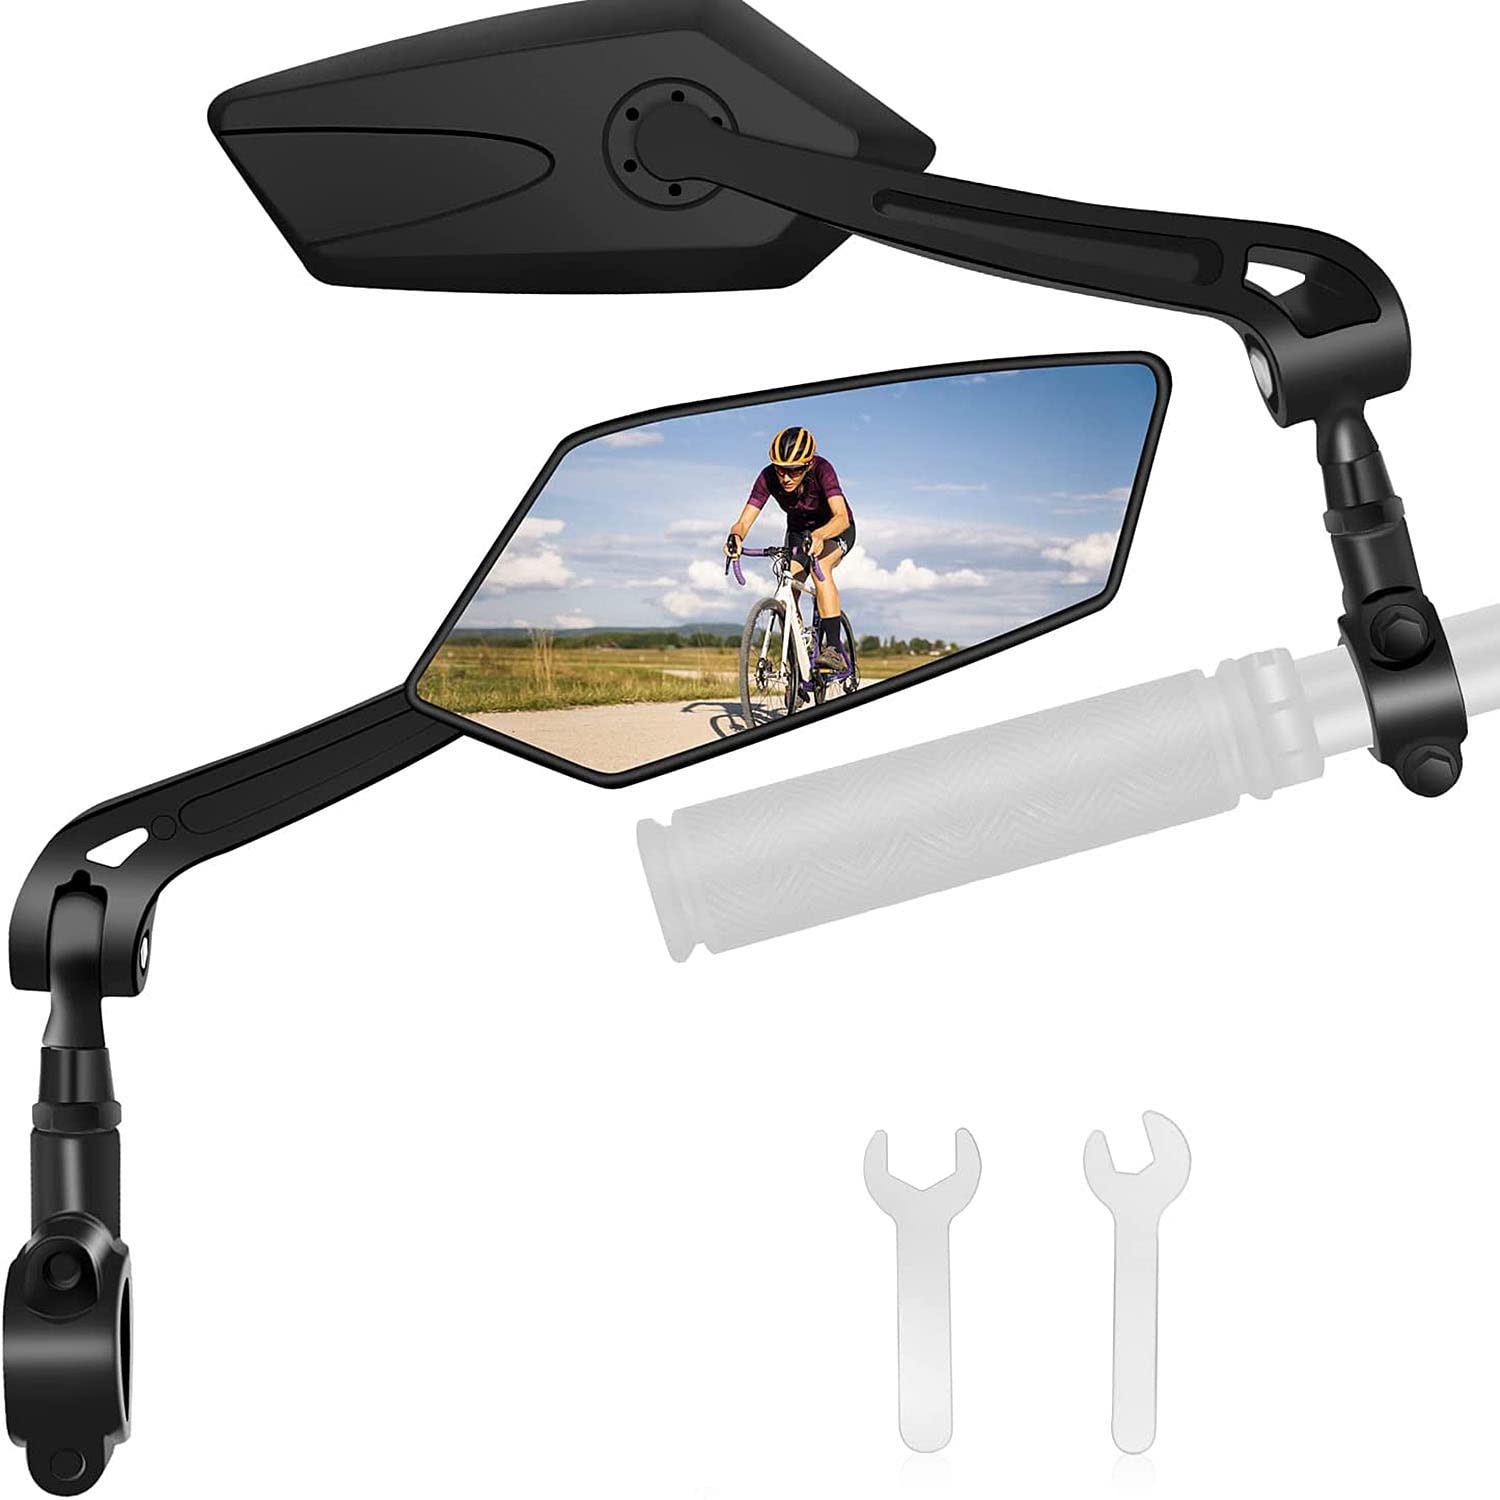 TOOSOAR 2PCS Fahrradspiegel Extra Große Spiegelfläche, 360° Fahrradspiegel für E-Bike, Universal Fahrrad Rückspiegel, für Fahrrad, Mountainbike, Rennräder, 20-24mm von TOOSOAR